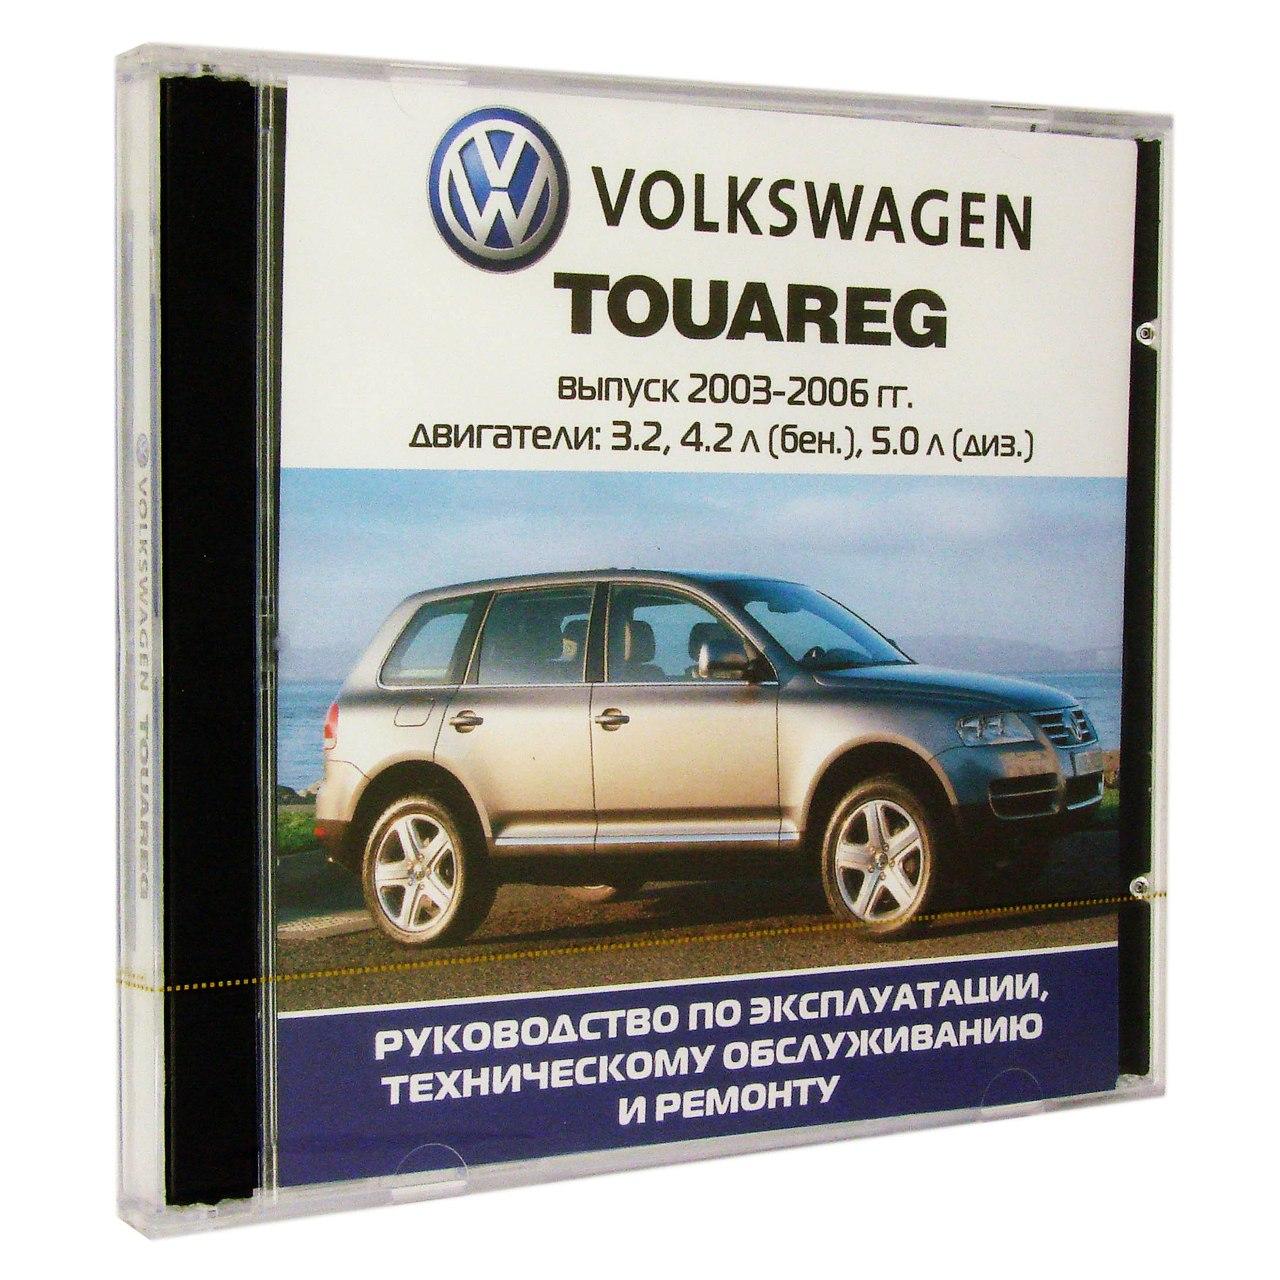 Компьютерный компакт-диск Volkswagen Touareg с 2003-2006г. Б(3,2;4,2) Д(5,0). ’Школа авторемонта’. (ПК), фирма "Третий Рим", 1CD